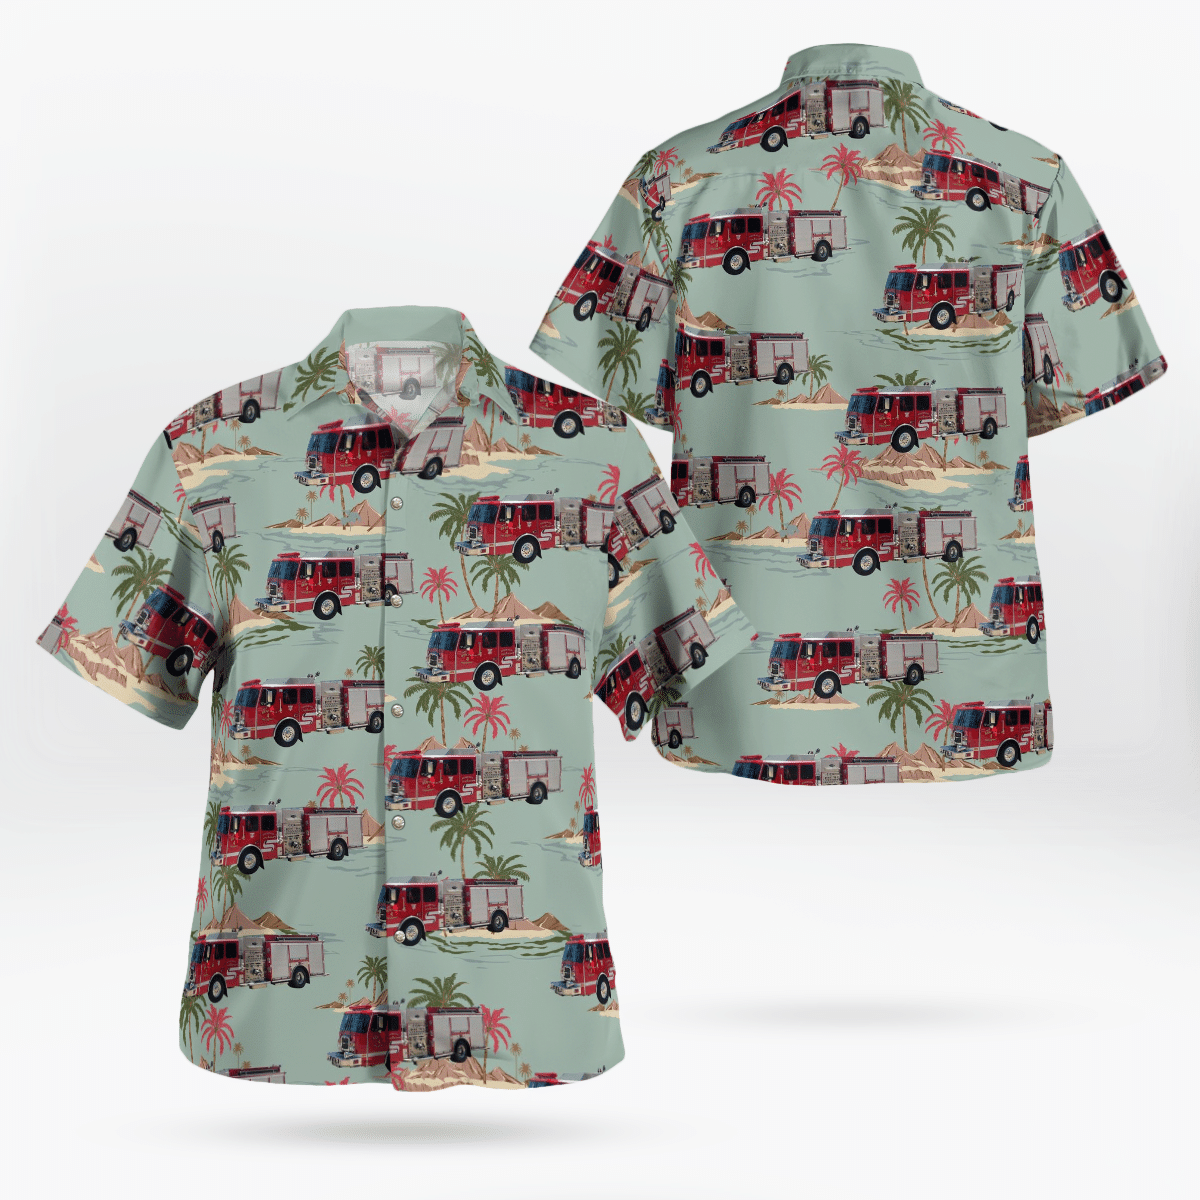 You won't regret buying these Aloha Shirt 159